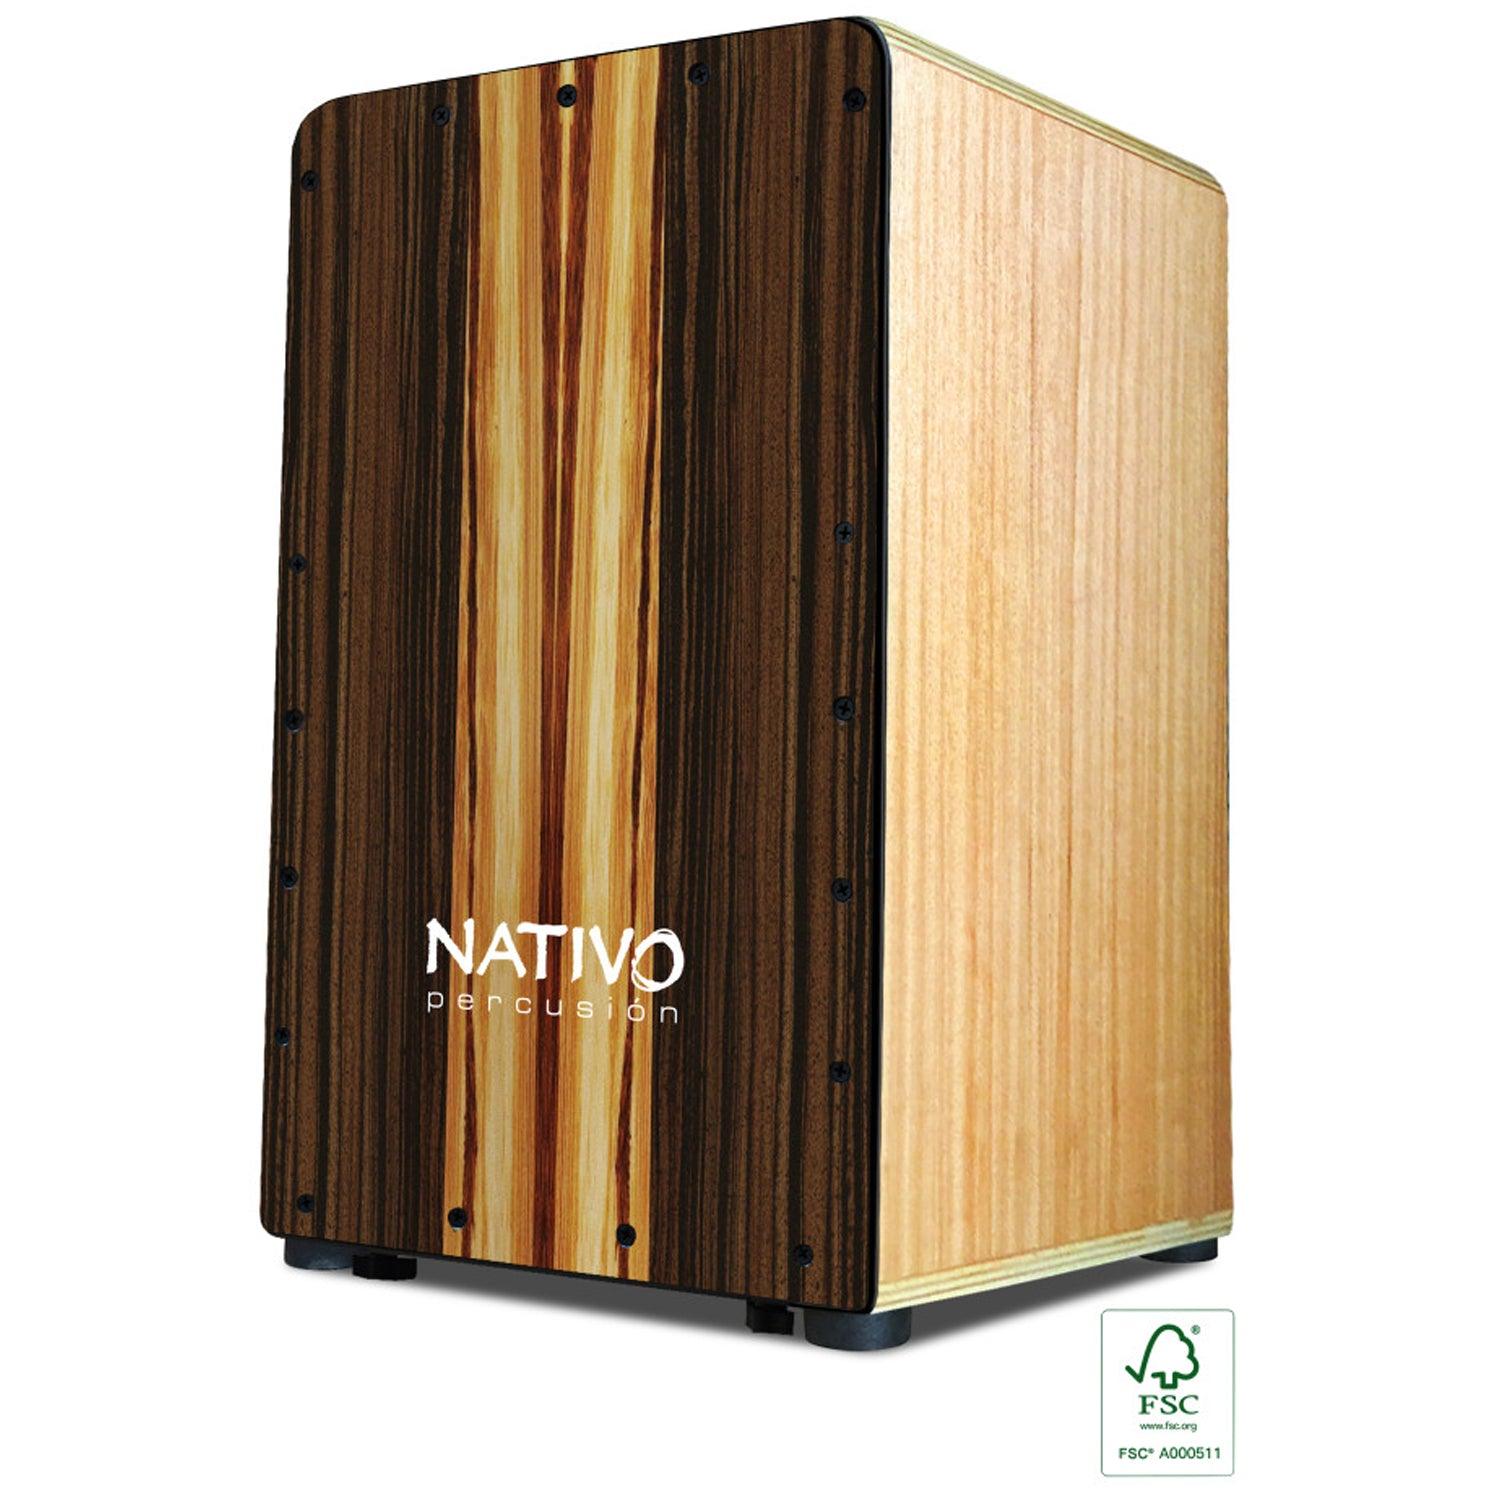 Nativo STUD-MACCHIATO Studio Series Standard-sized Class A Oak Cajon MACCHIATO Front Boad Finish - DY Pro Audio